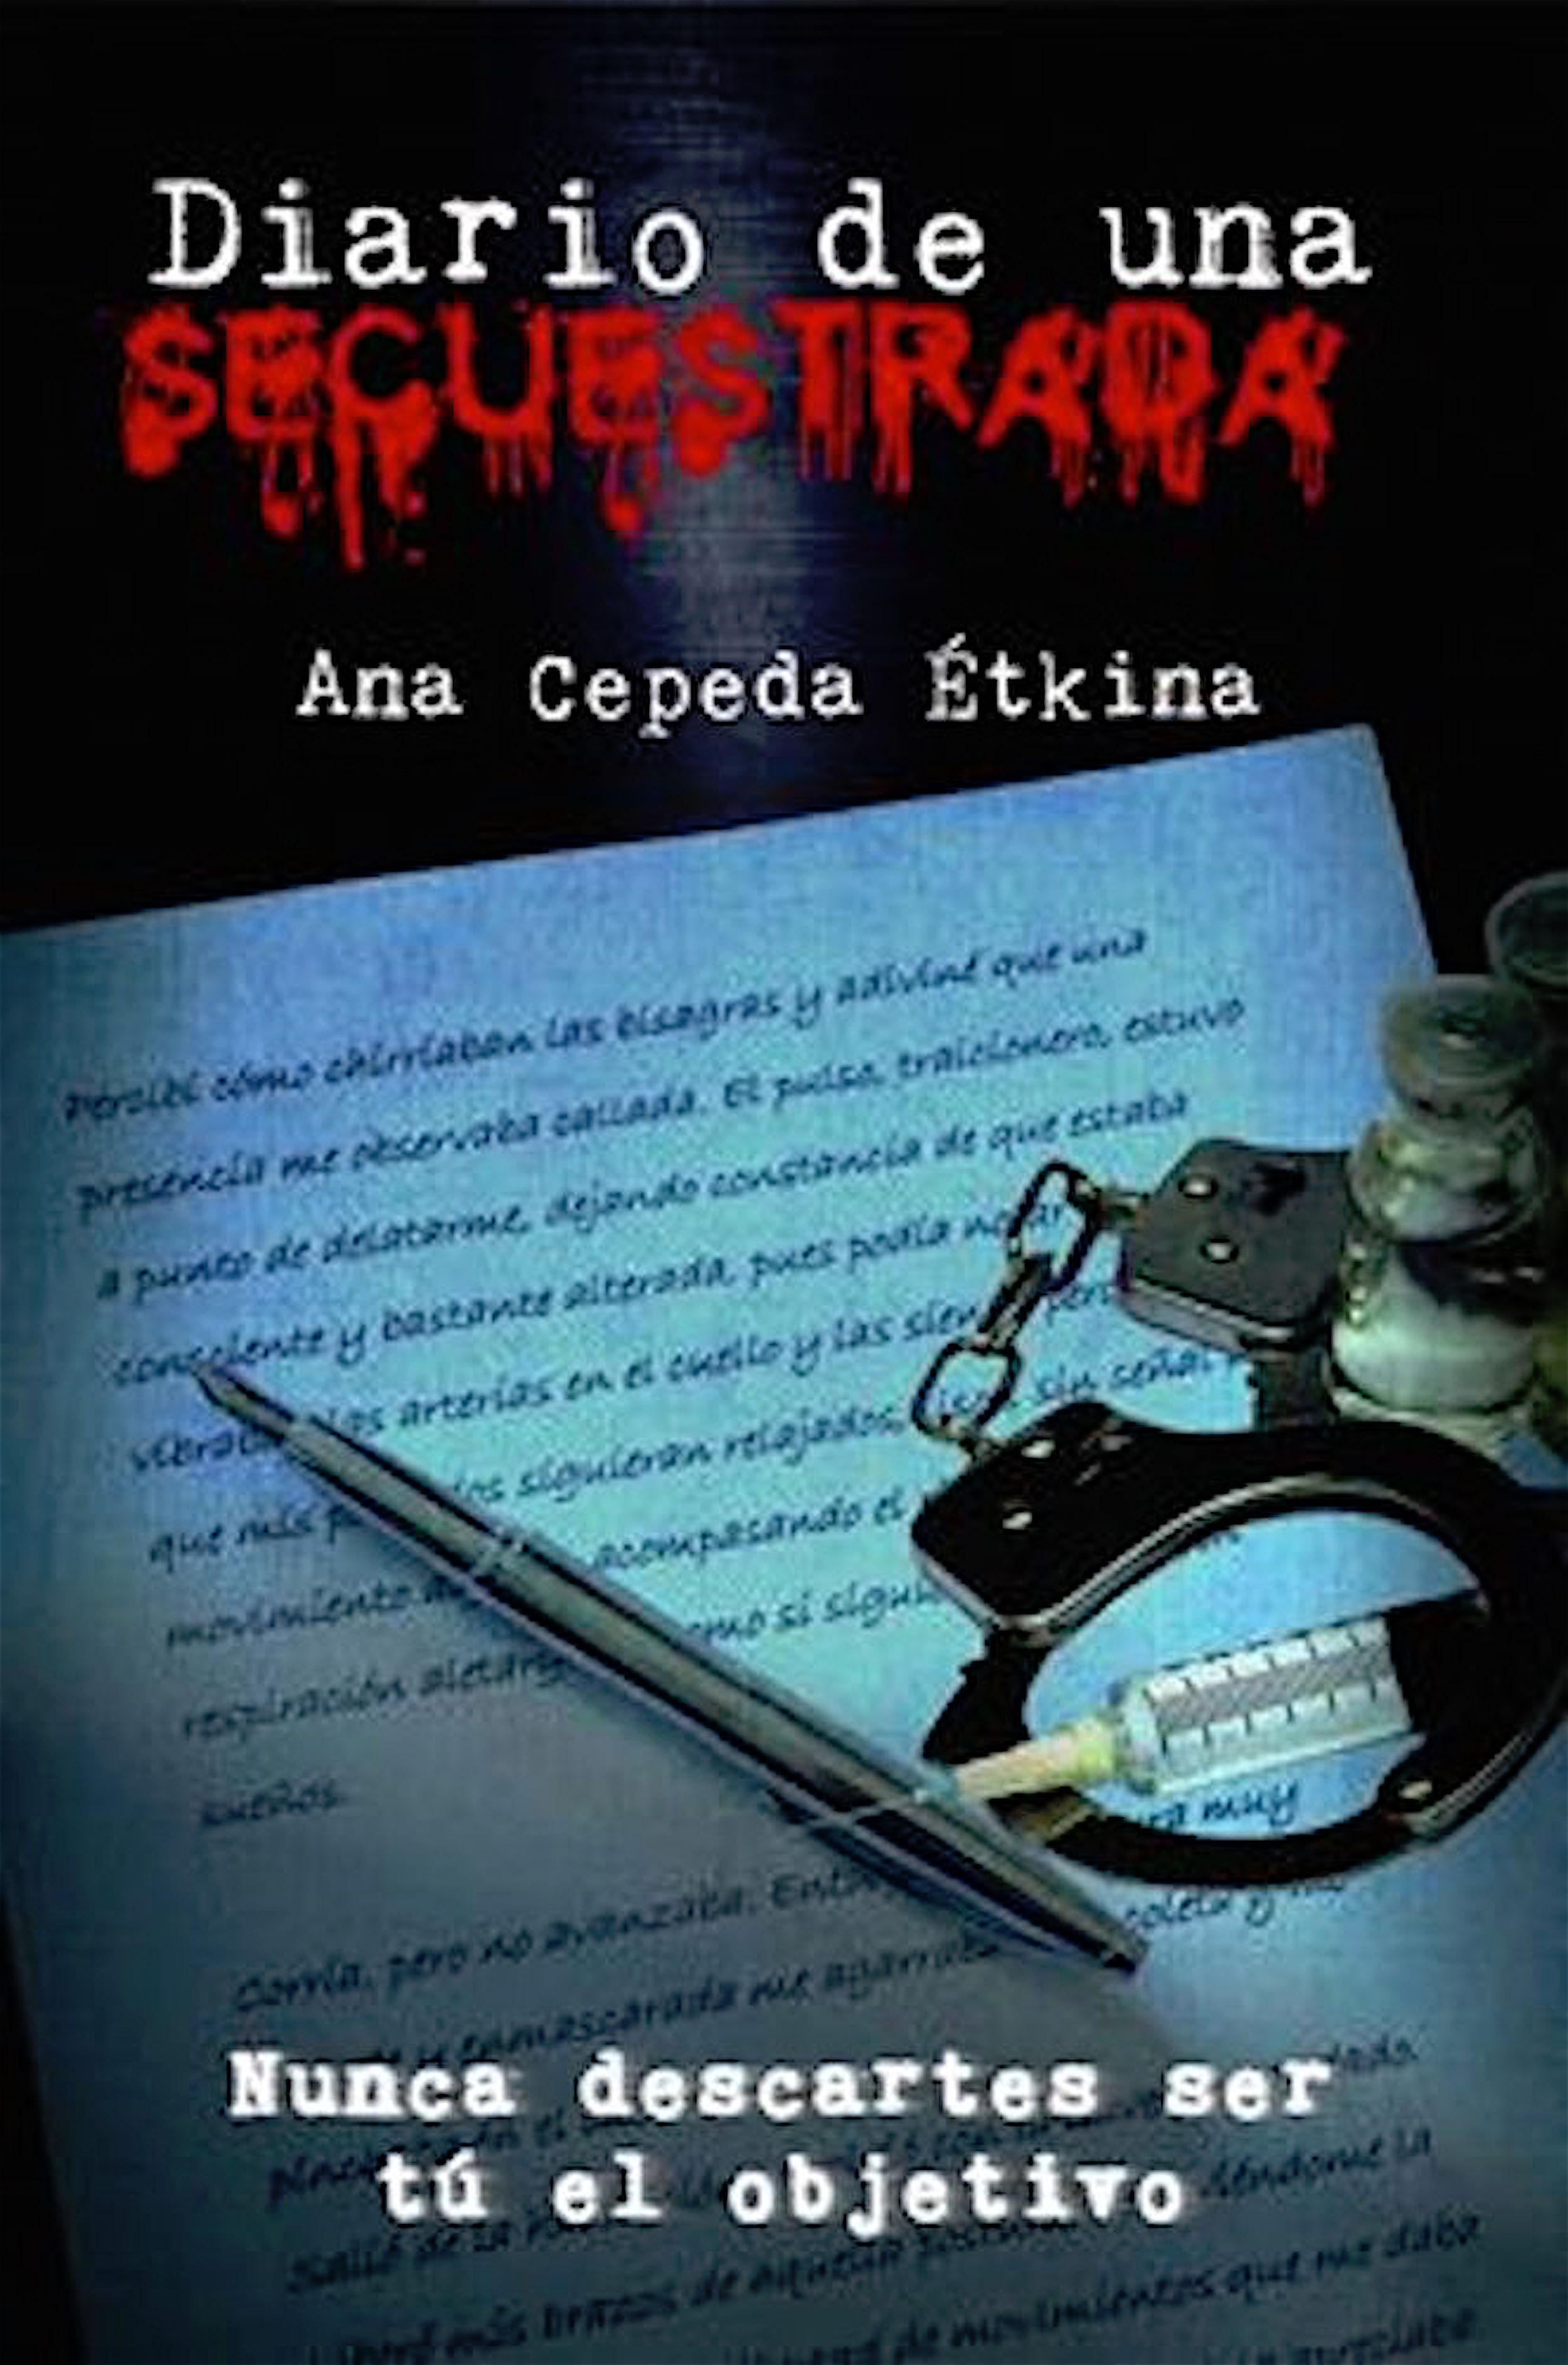 Ana Cepeda Étkina Diario de una secuestrada